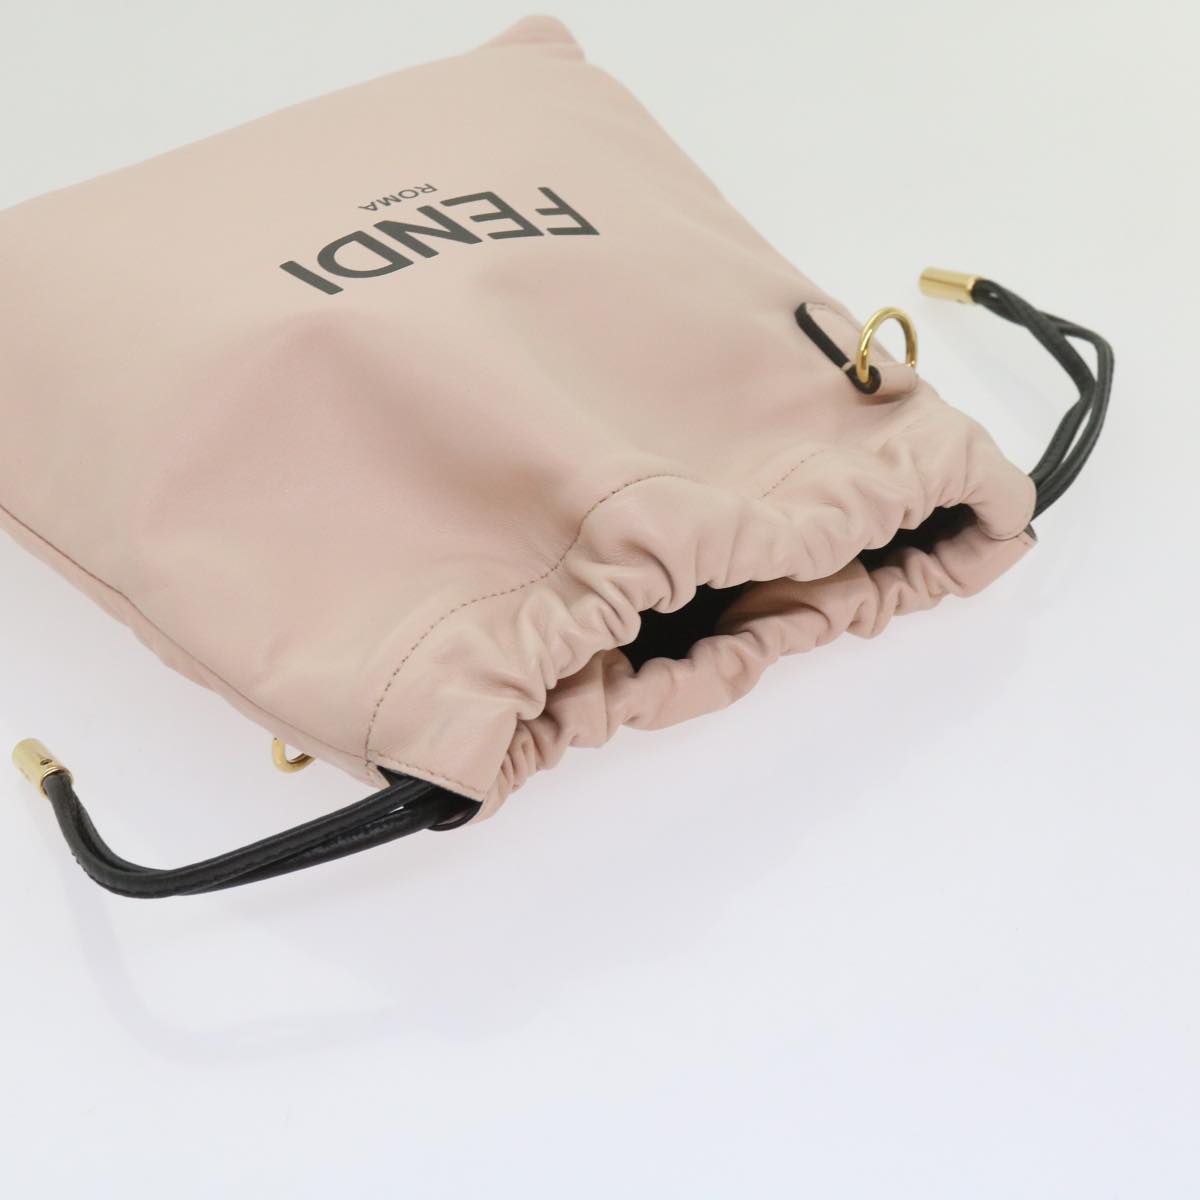 FENDI Purse Shoulder Bag Leather Beige Auth 69042A